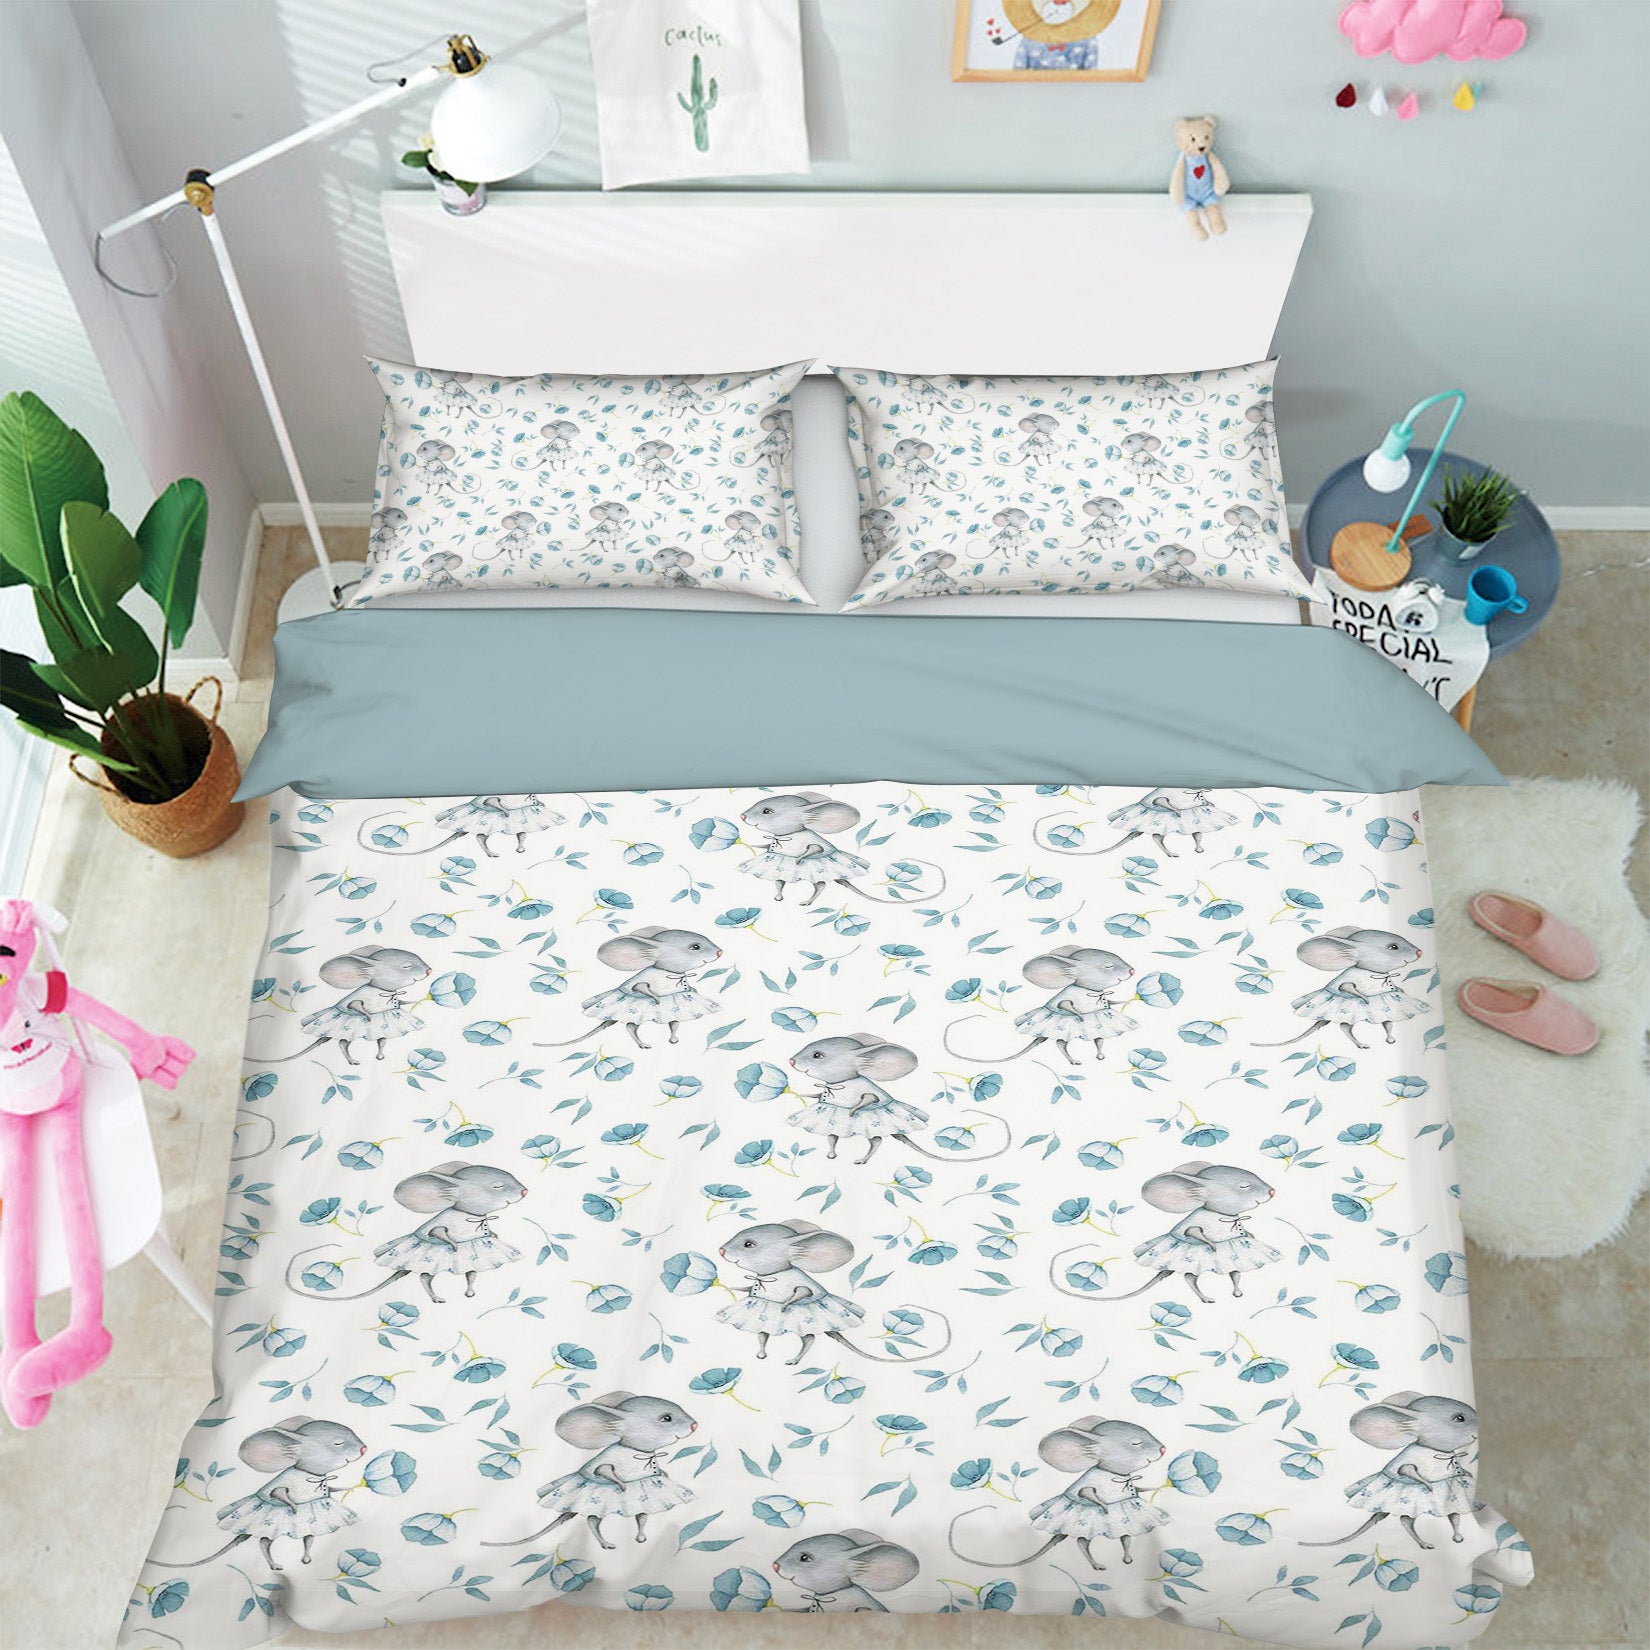 3D Mouse Flower 196 Uta Naumann Bedding Bed Pillowcases Quilt